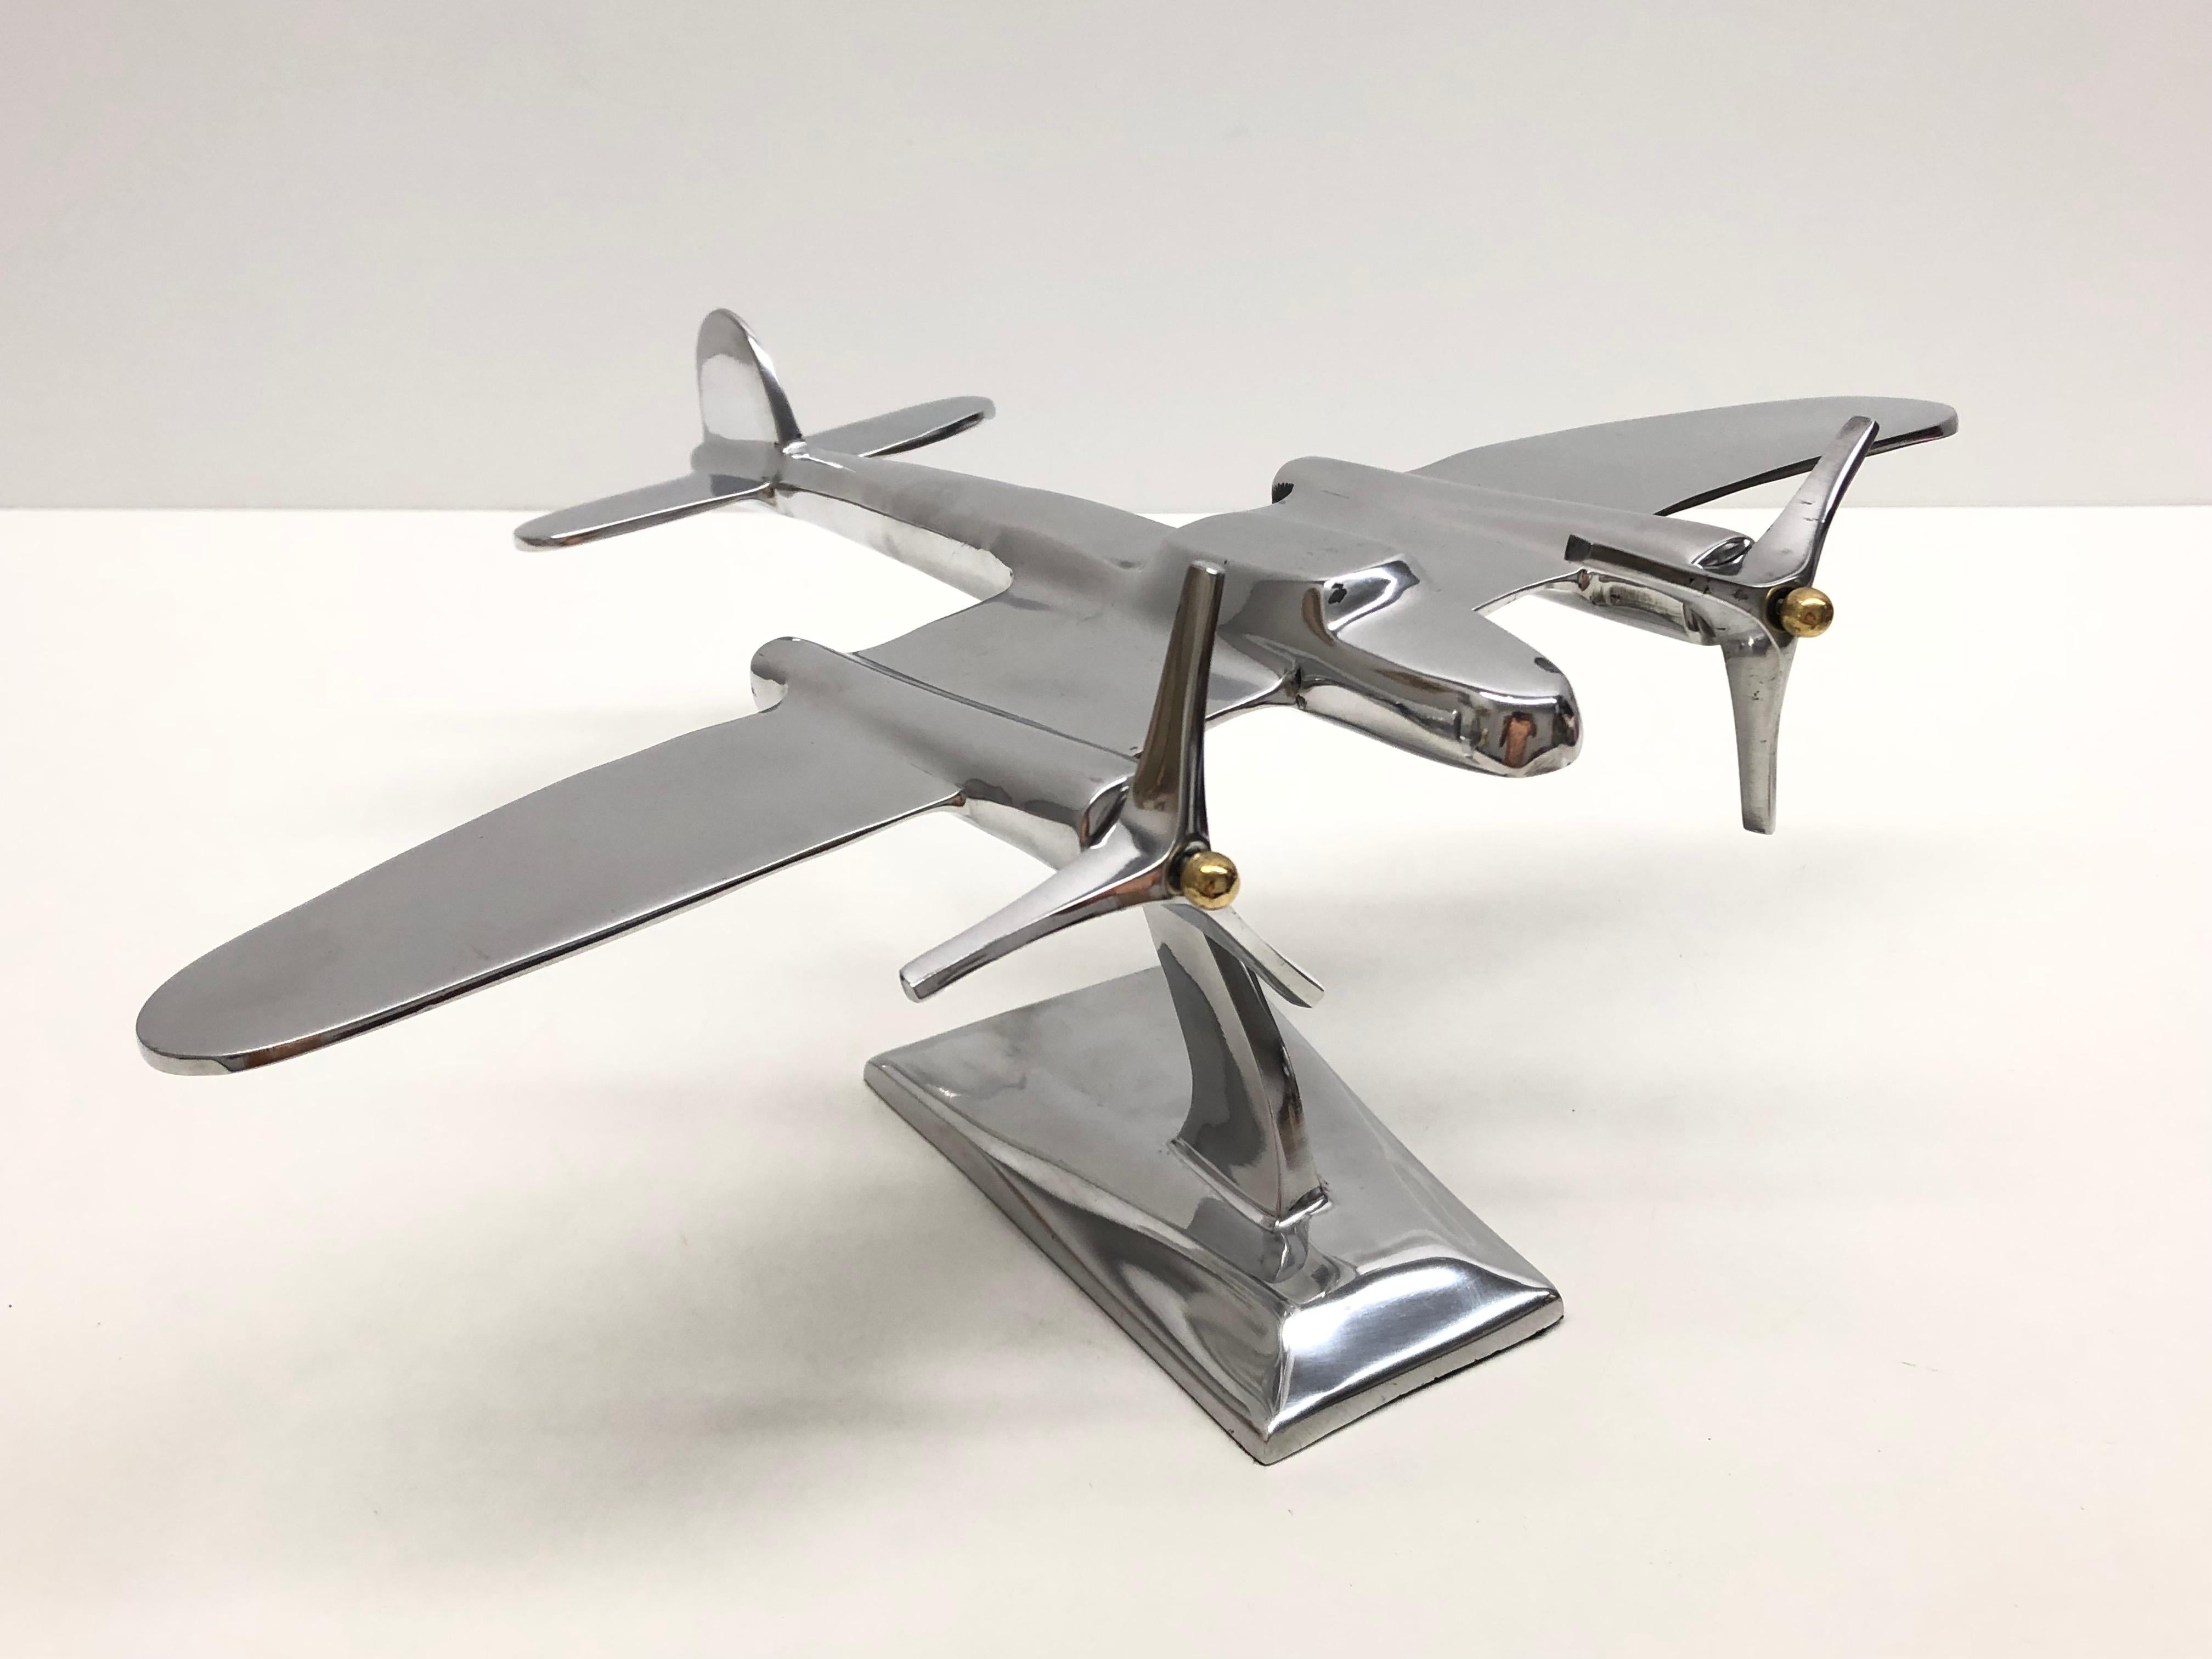 Une maquette d'avion industriel réalisée dans les années 1980. Cet objet unique est fait de métal, probablement de l'aluminium. Une belle sculpture industrielle pour les exposer sur une armoire, une crédence ou un bureau.